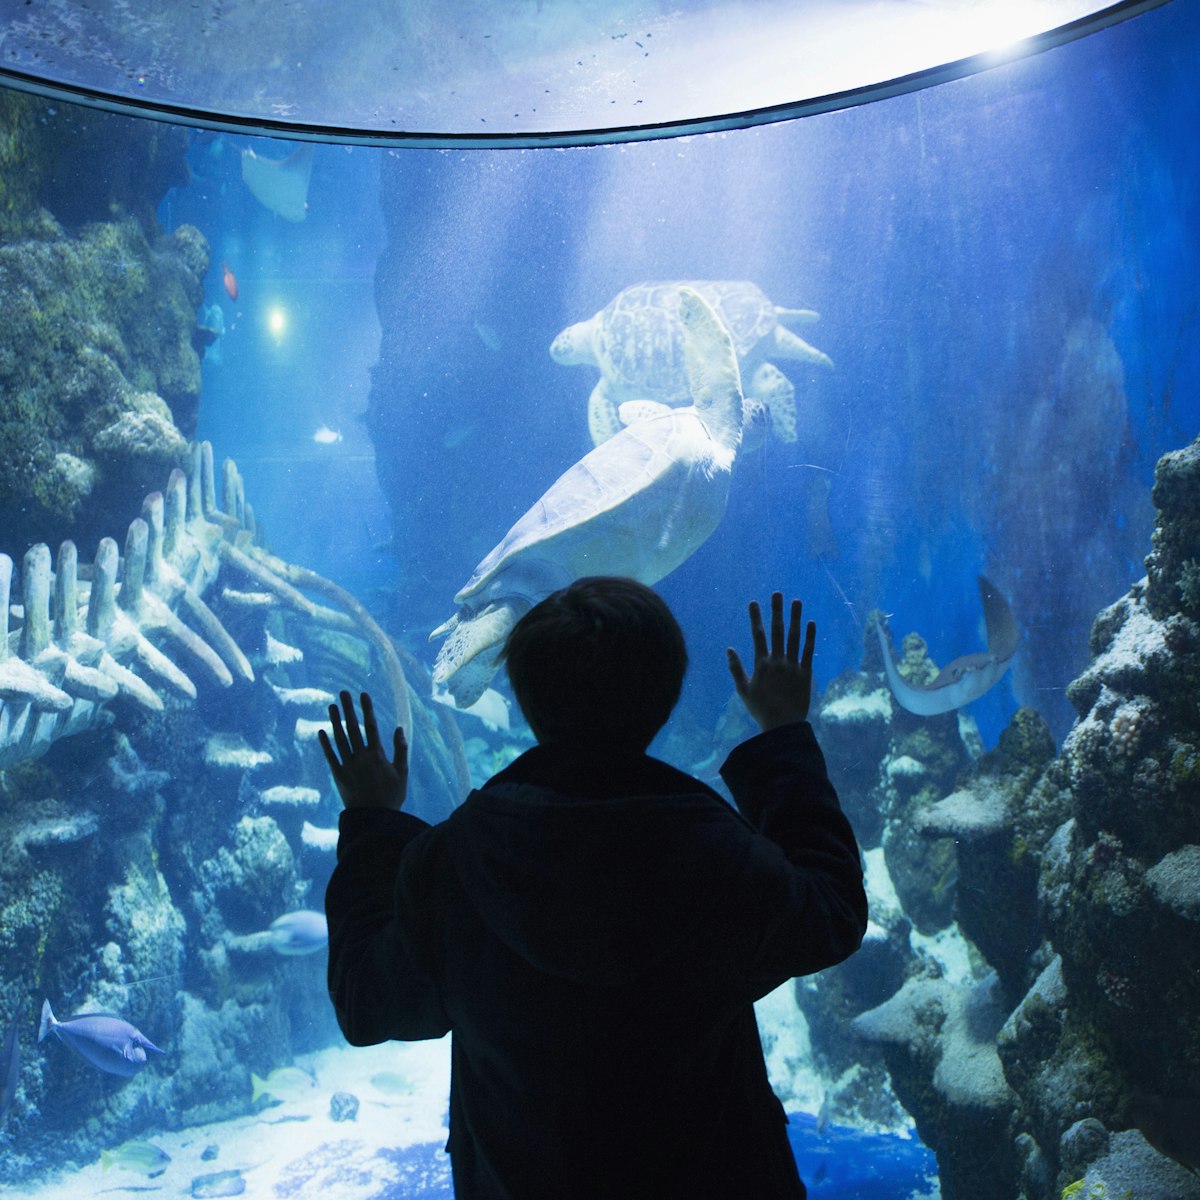 Boy admiring sea life in aquarium